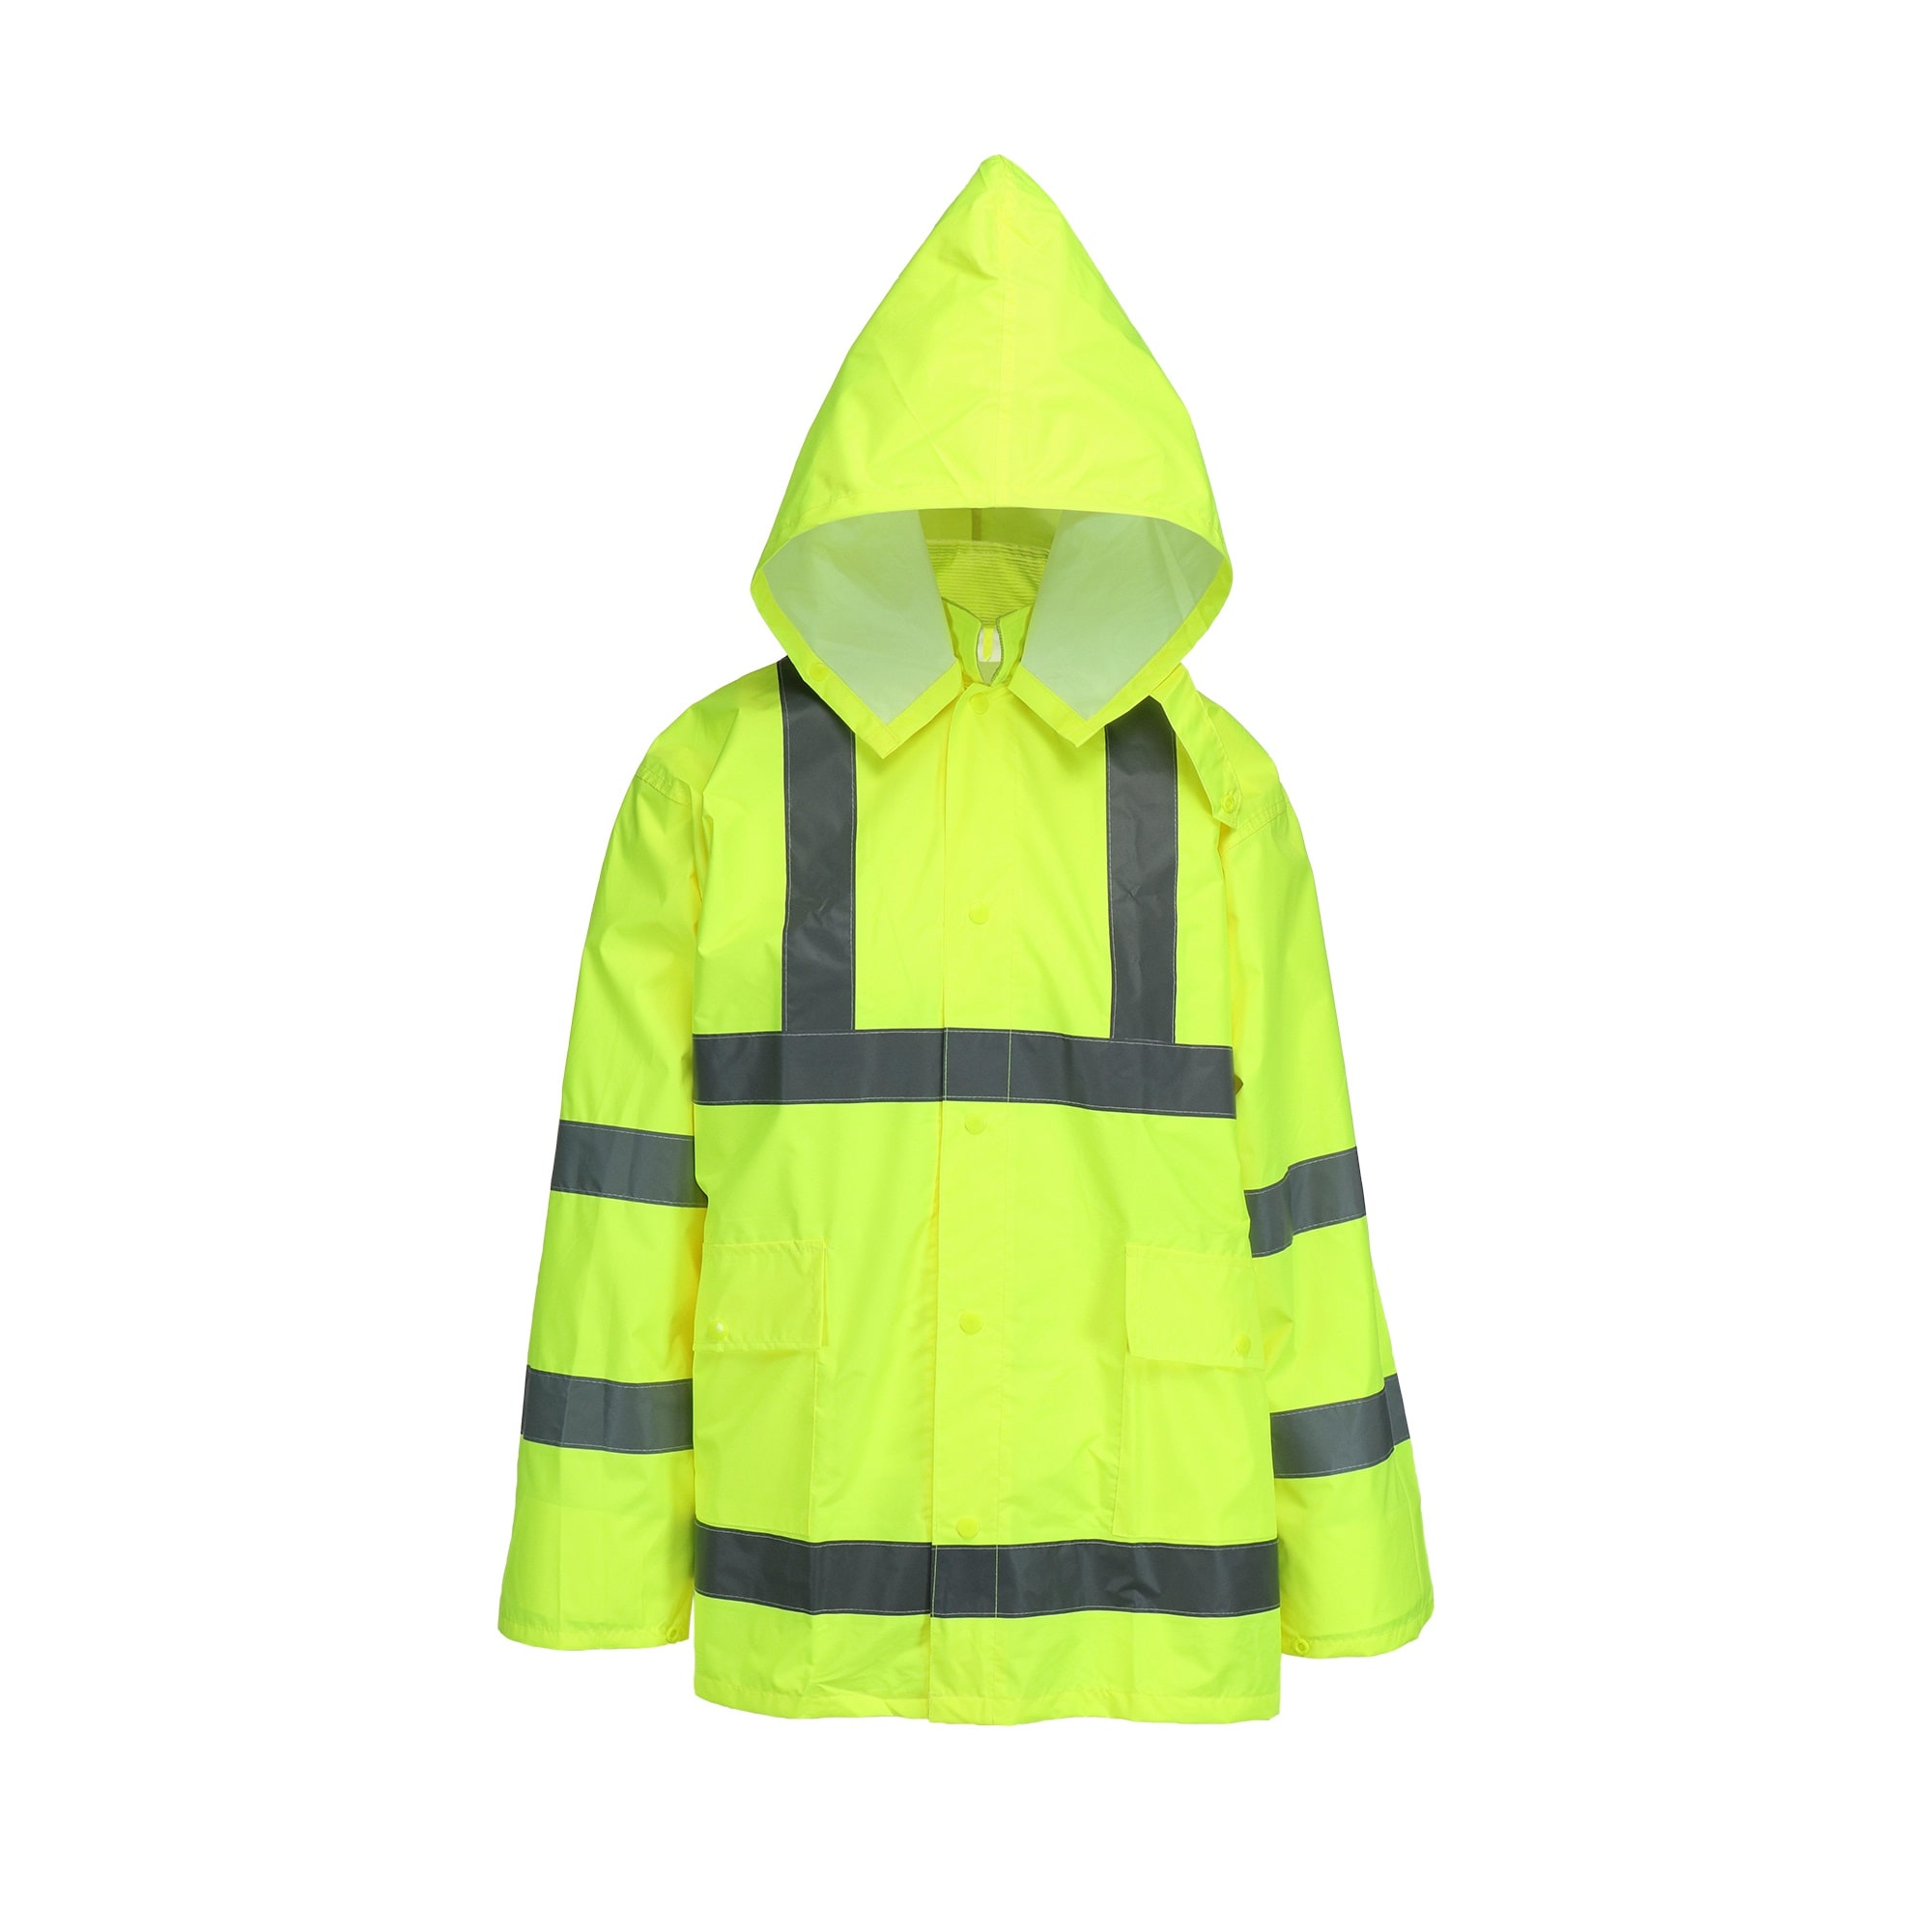 Labymos Mens Waterproof Rain Suit with Reflective Strip Waterproof